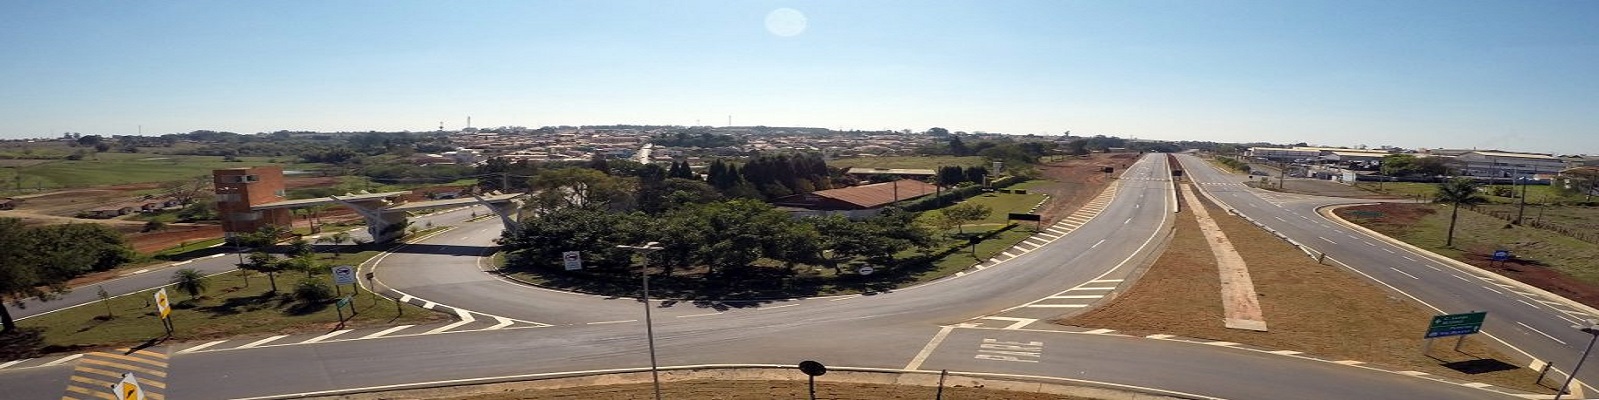 brasao-exercito-brasileiro – Prefeitura Municipal de Cesário Lange – SP